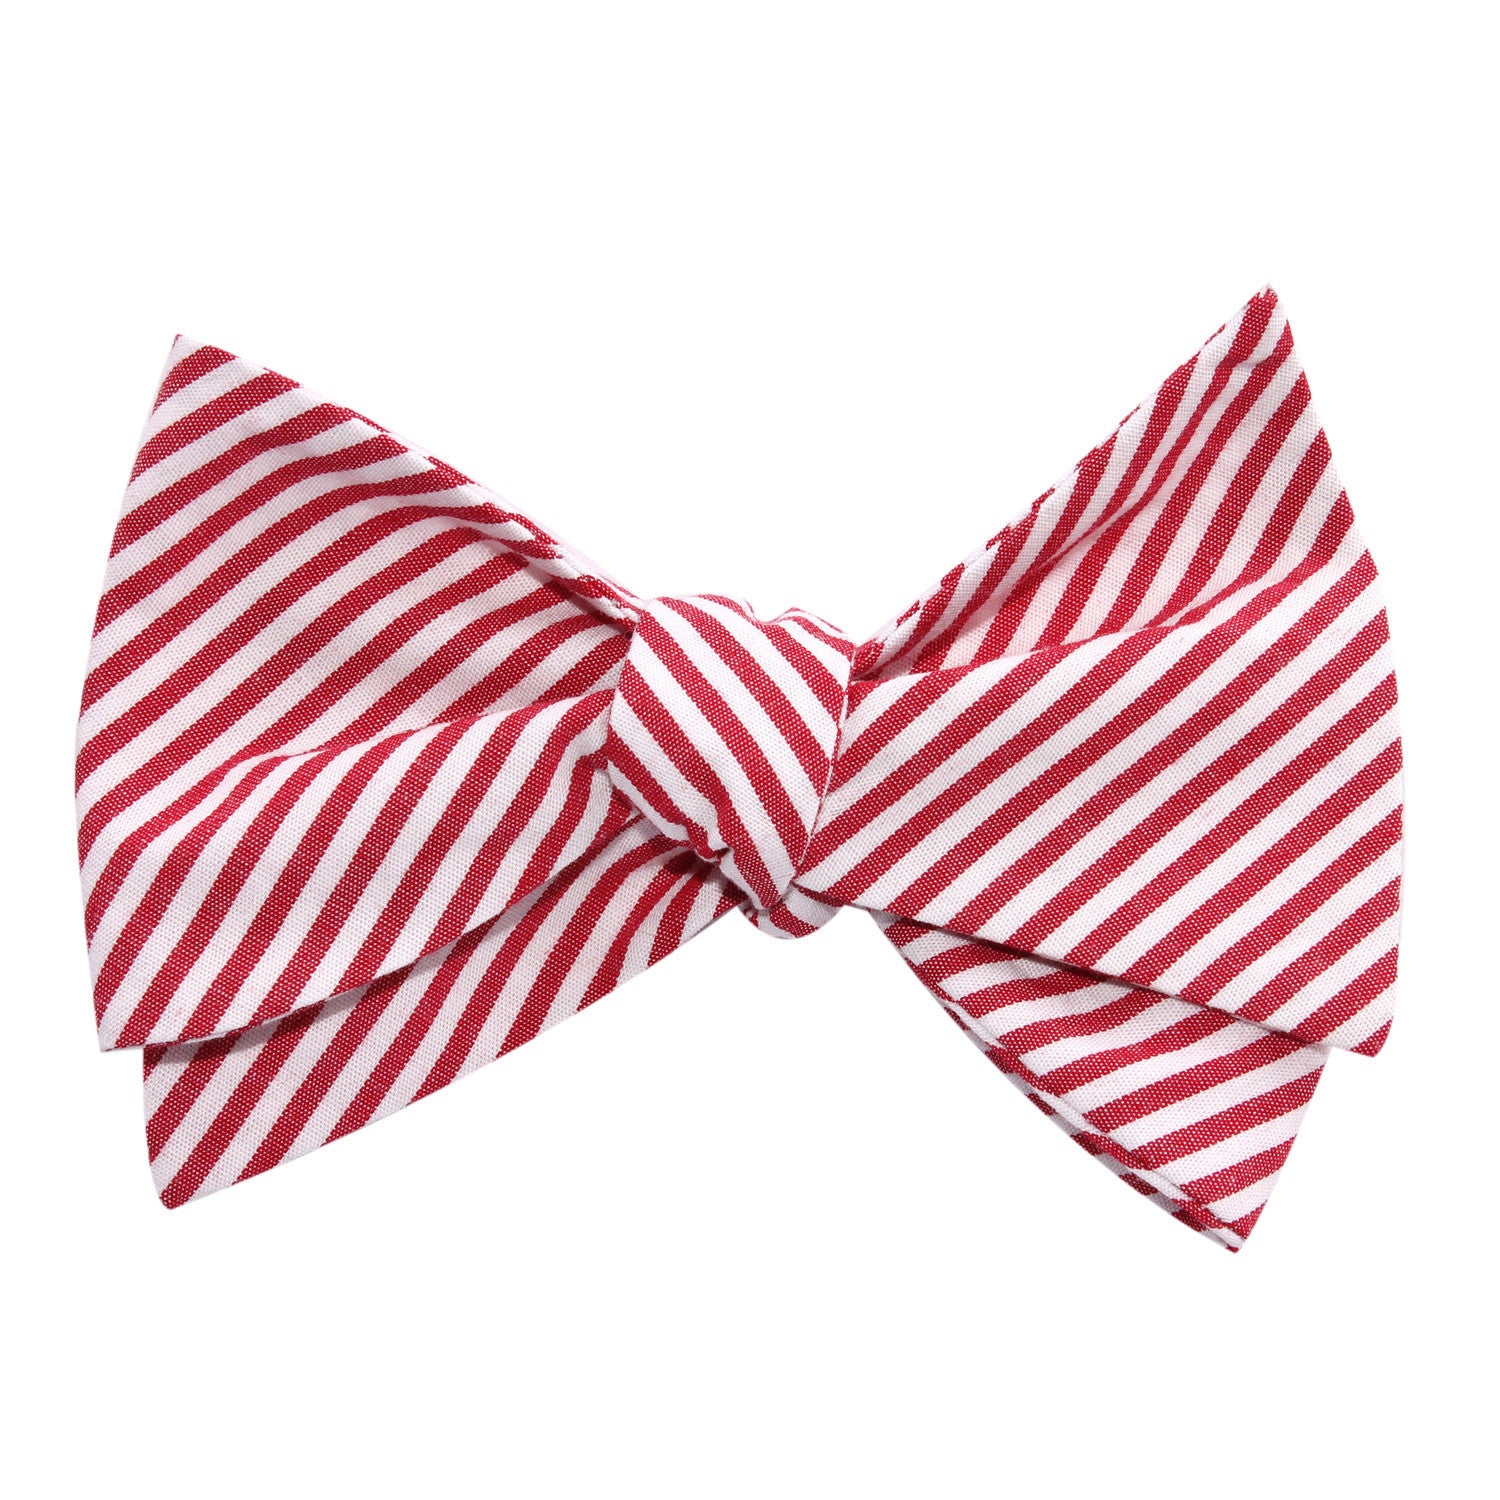 Red and White Chalk Stripe Cotton Self Tie Bow Tie | Men Untied Bowtie ...